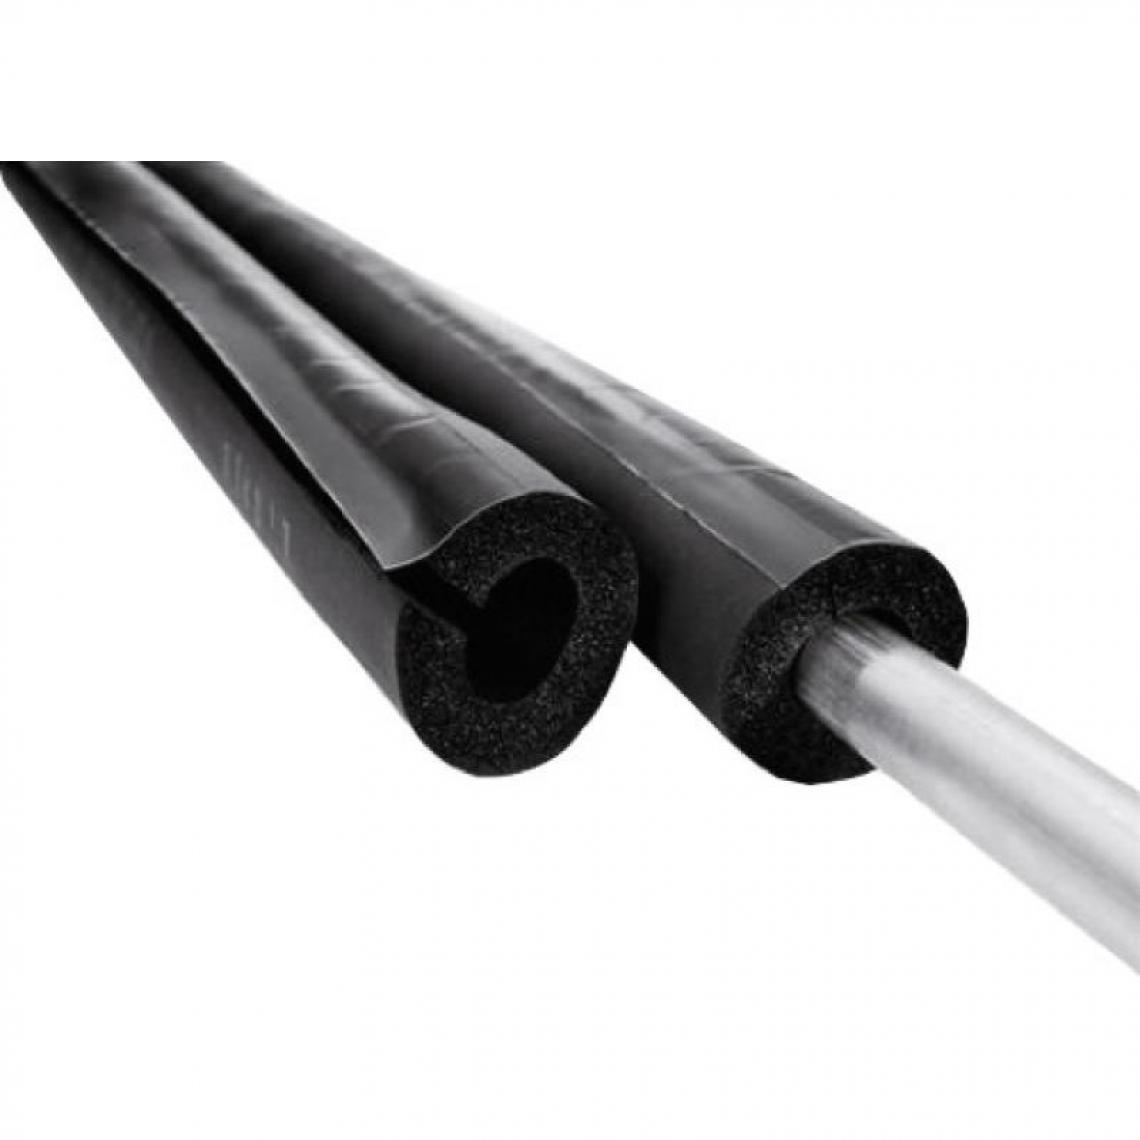 NMC - Manchon isolant fendu M1, épaisseur 13 mm, longueur 2 m, pour tuyaux diamètre 35 - Coudes et raccords PVC